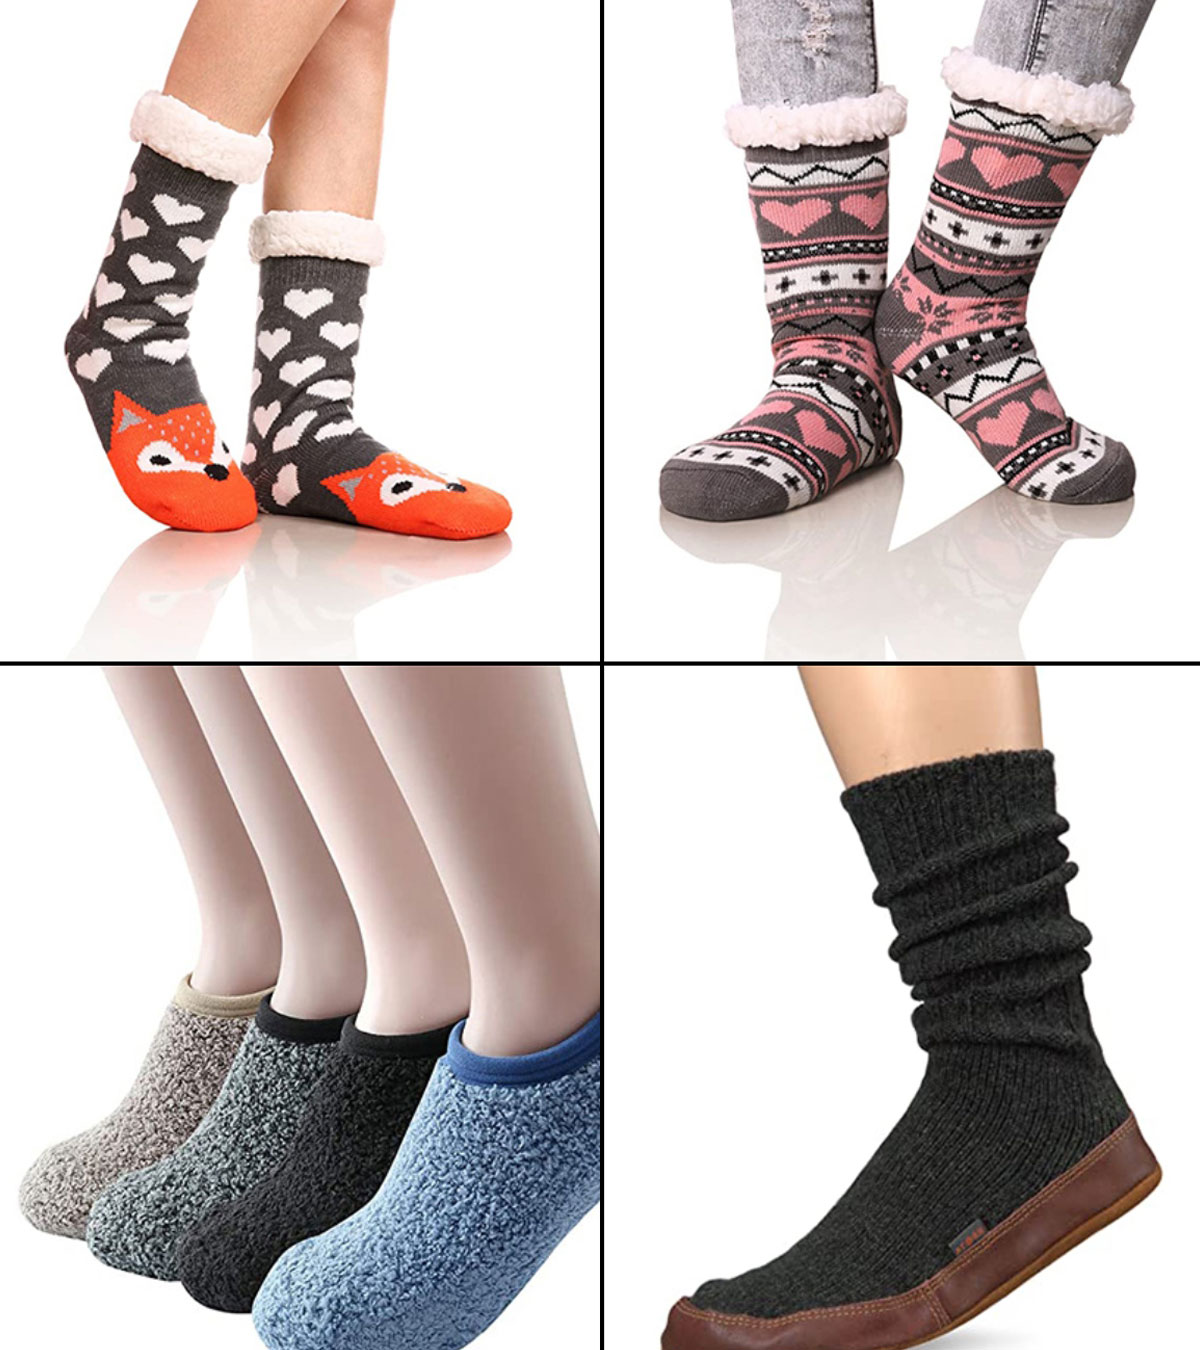 14 Best Slipper Socks For Women In 2020